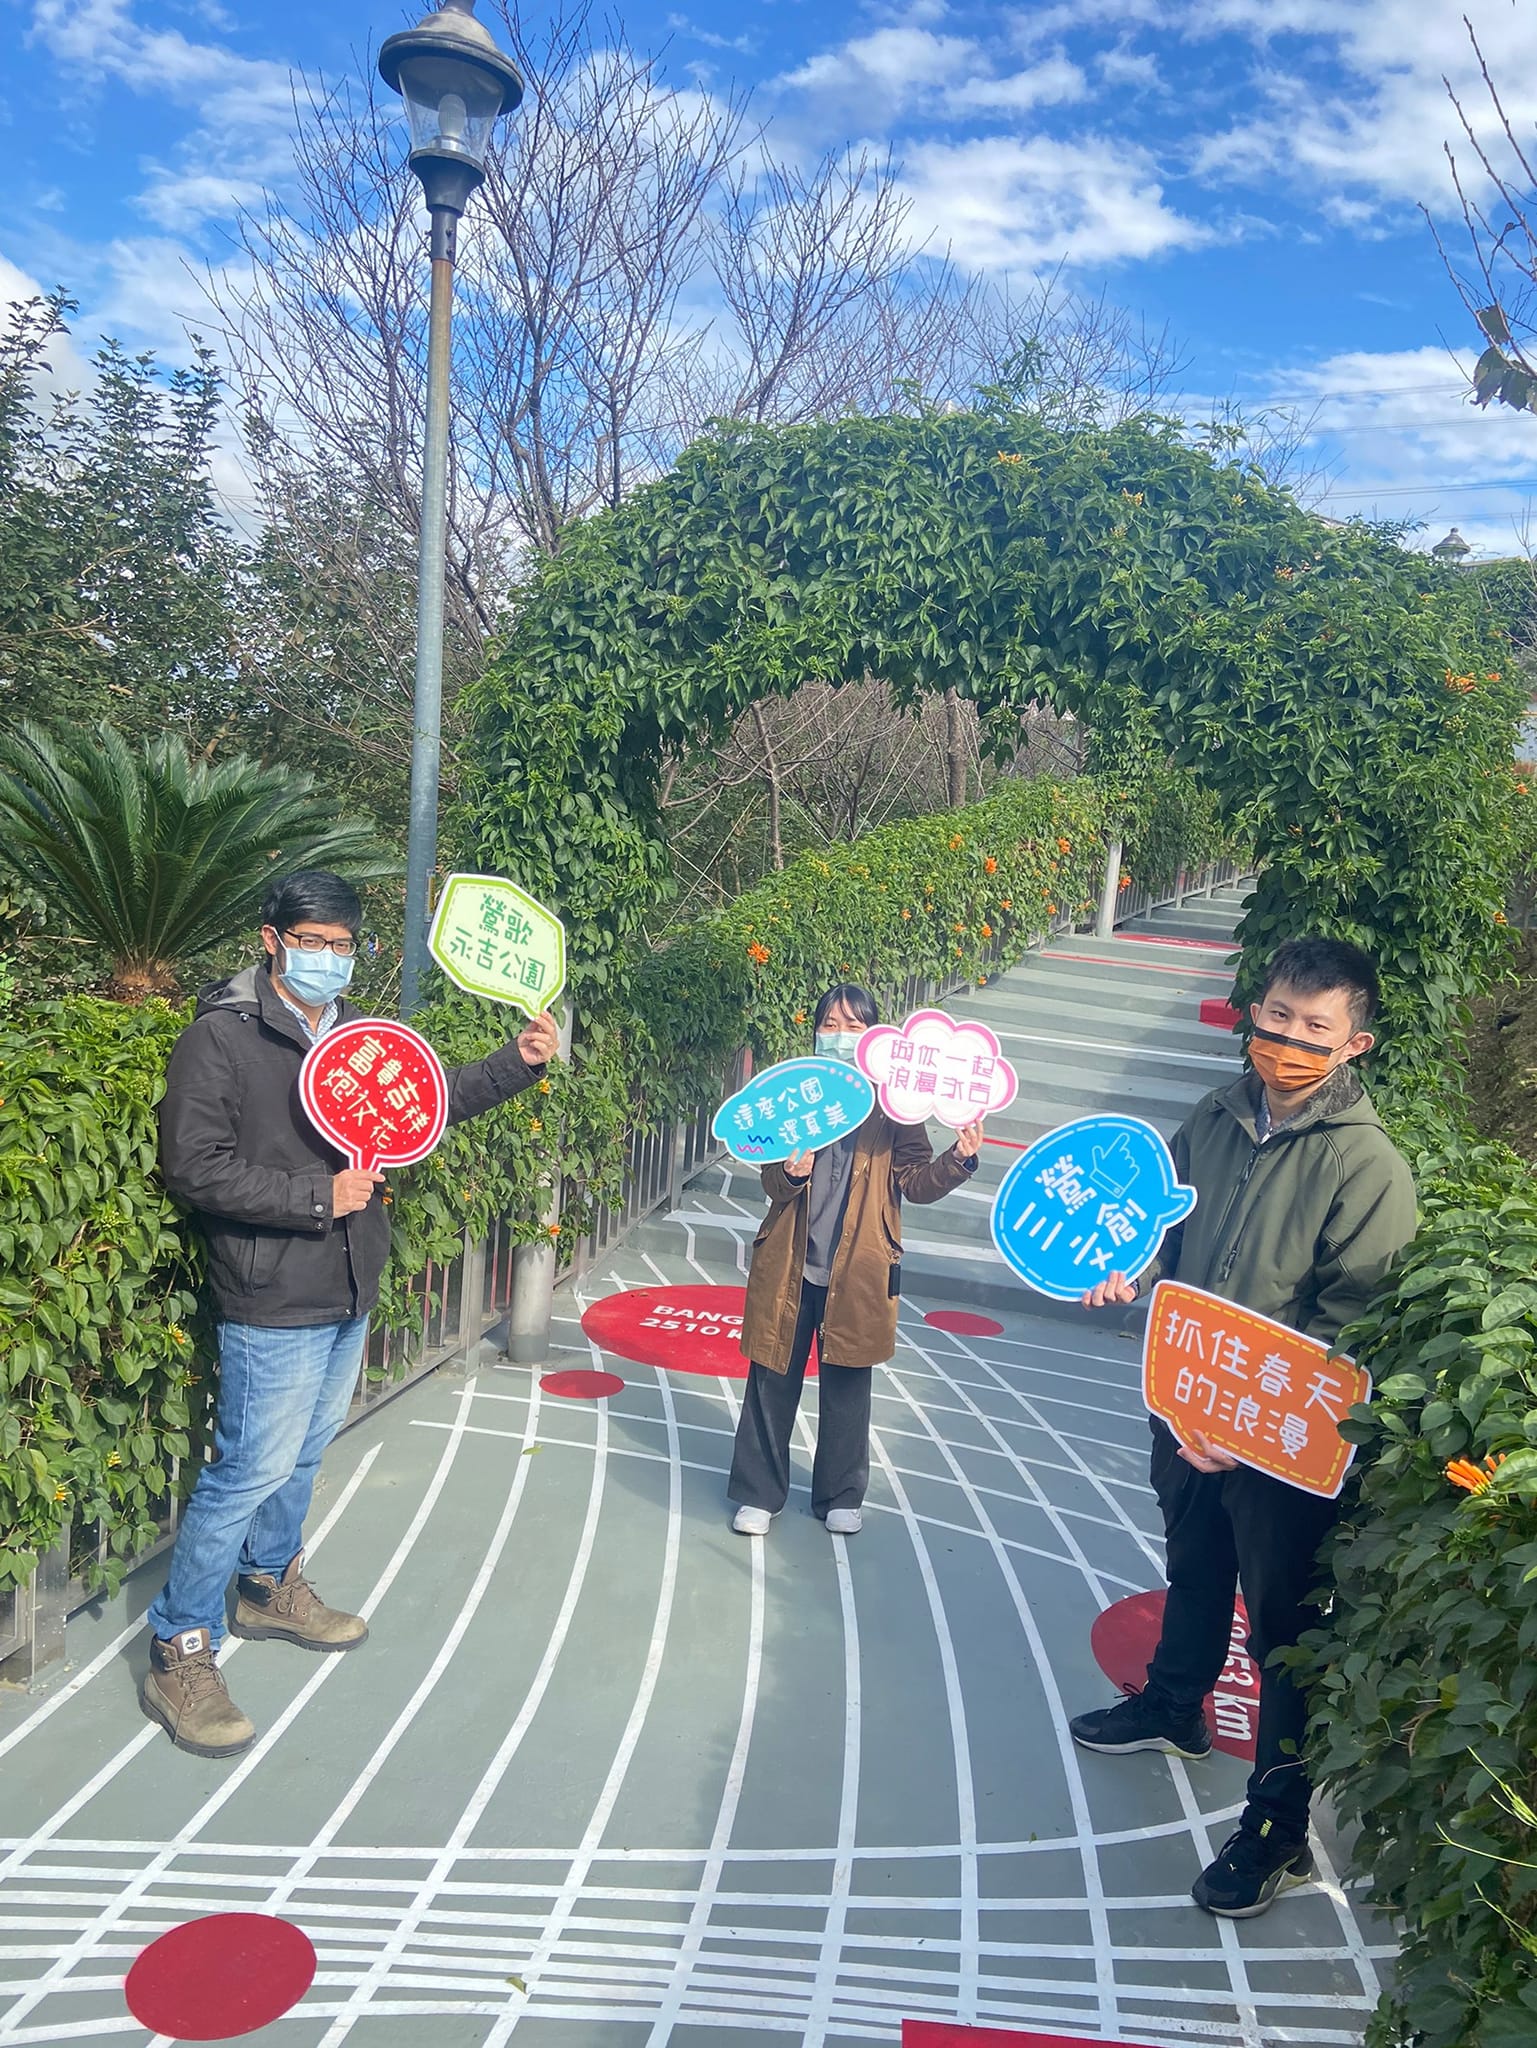 20220121永吉公園花廊步道彩繪美學再升級-8